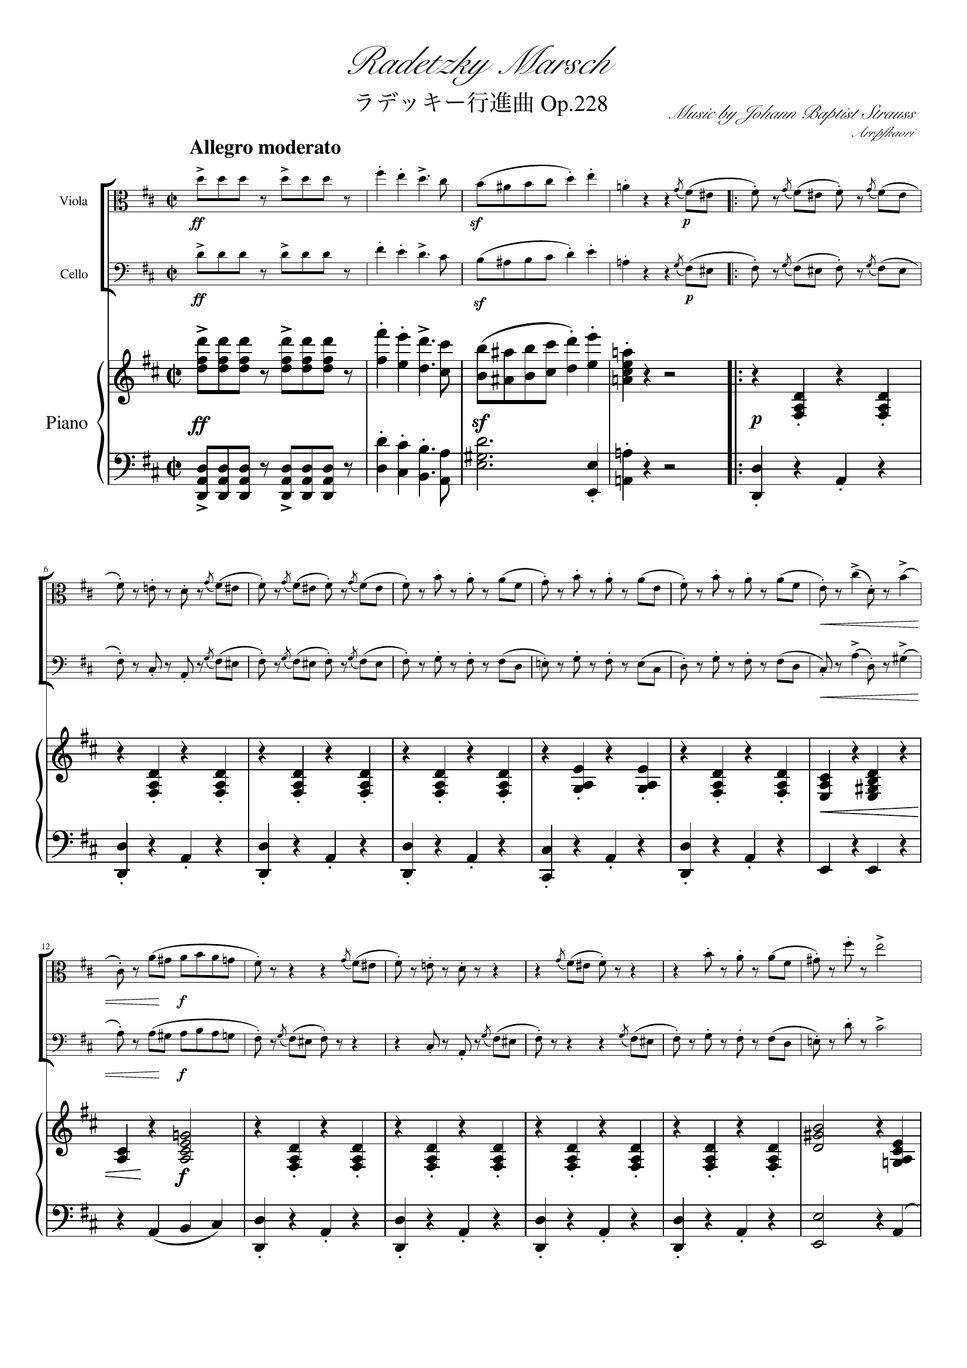 ヨハンシュトラウス1世 - ラデッキー行進曲 (D・ピアノトリオ/ヴィオラ&チェロ) by pfkaori